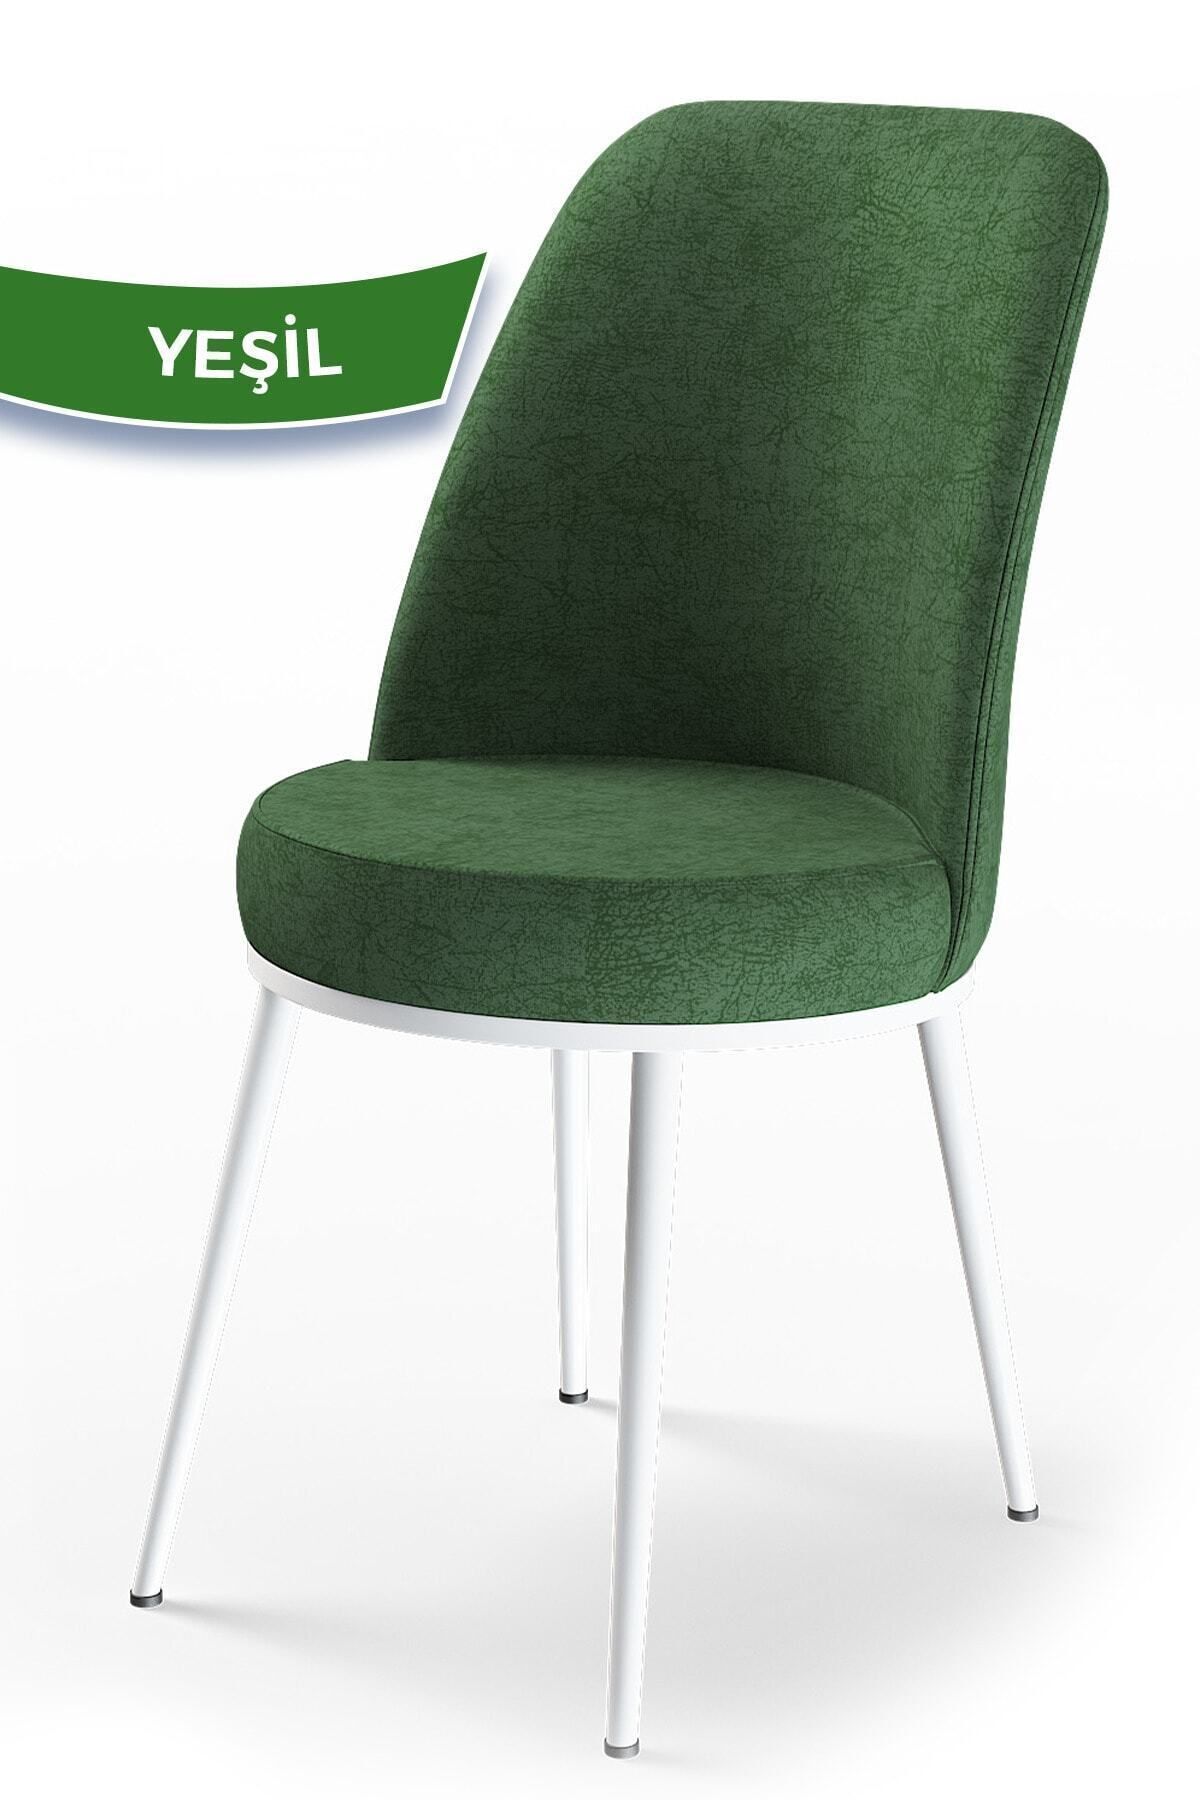 Canisa Concept Dexa Serisi Haki Yeşil Renk Sandalye Mutfak Sandalyesi, Yemek Sandalyesi Ayaklar Beyaz